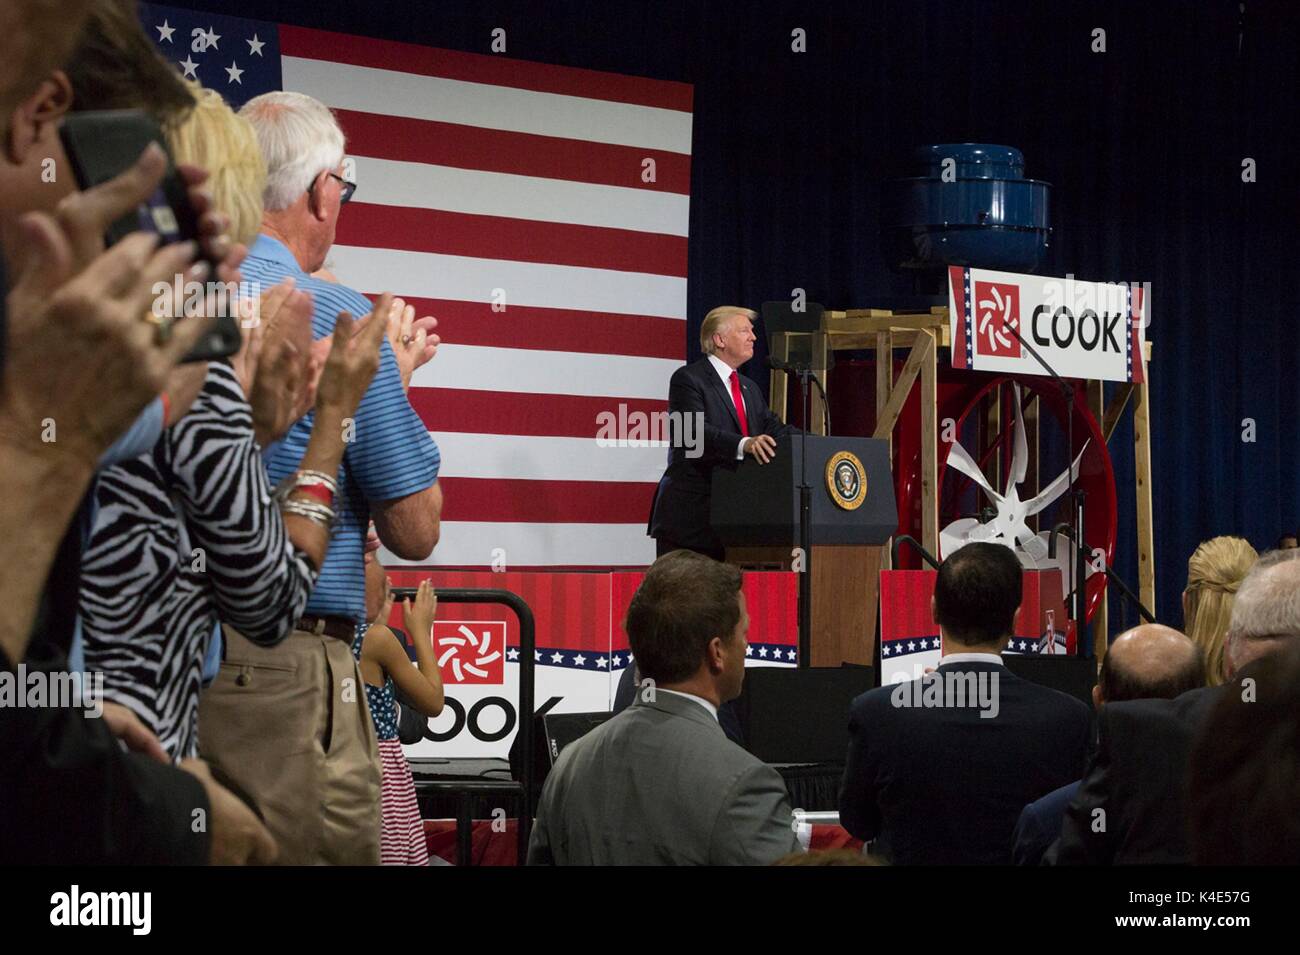 Le Président américain Donald Trump adresse à un public lors d'un événement de lancement du projet de réforme fiscale à la société Cook Loren, 30 août 2017 à Springfield, Missouri. Banque D'Images